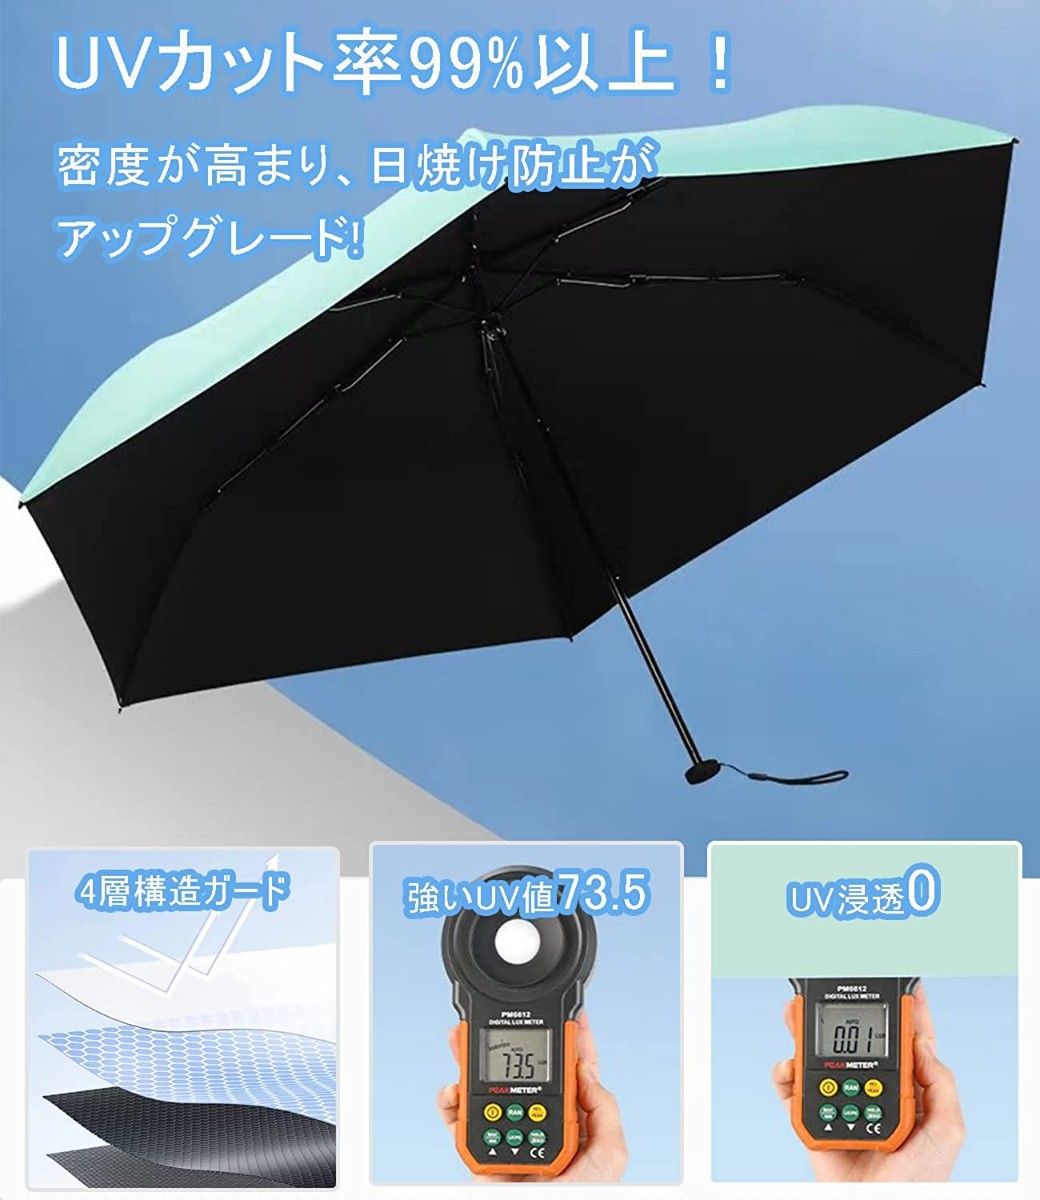 日傘 折りたたみ傘 超軽量 UVカット率100% 完全遮光 紫外線対策 晴雨兼用 超コンパクトサイズ 収納ポーチ付き イエロー